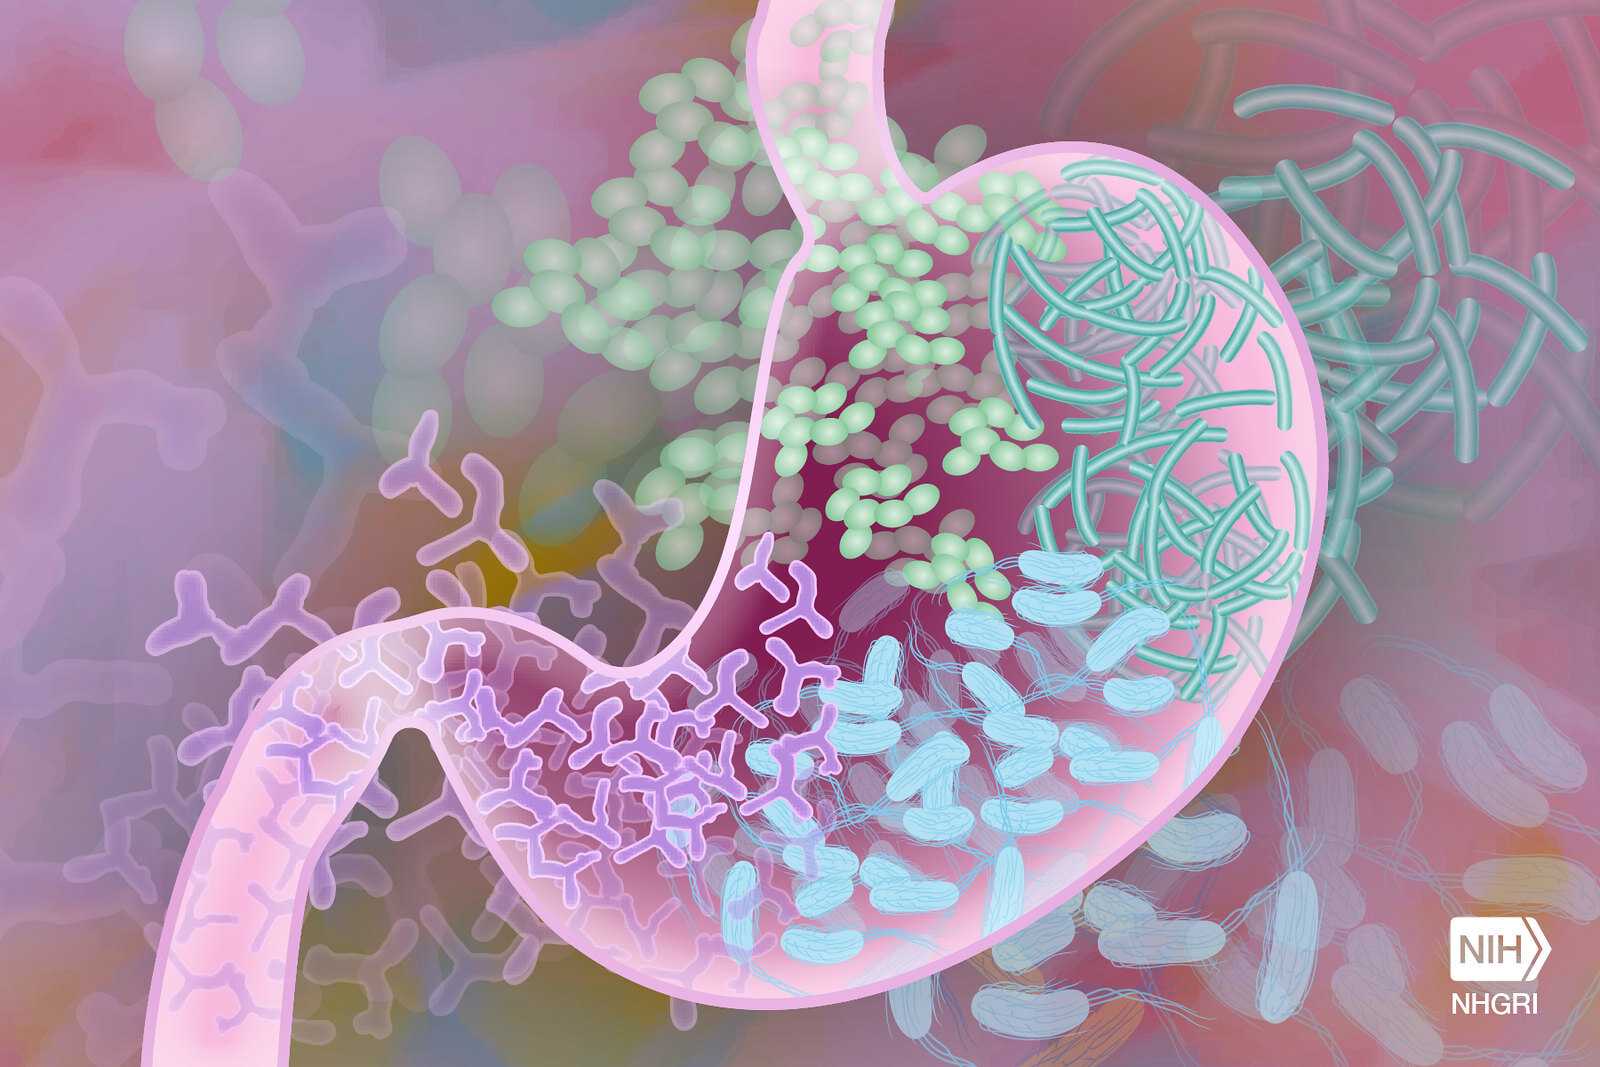 Обмен генами помог бактериям кишечника усвоить новый витамин